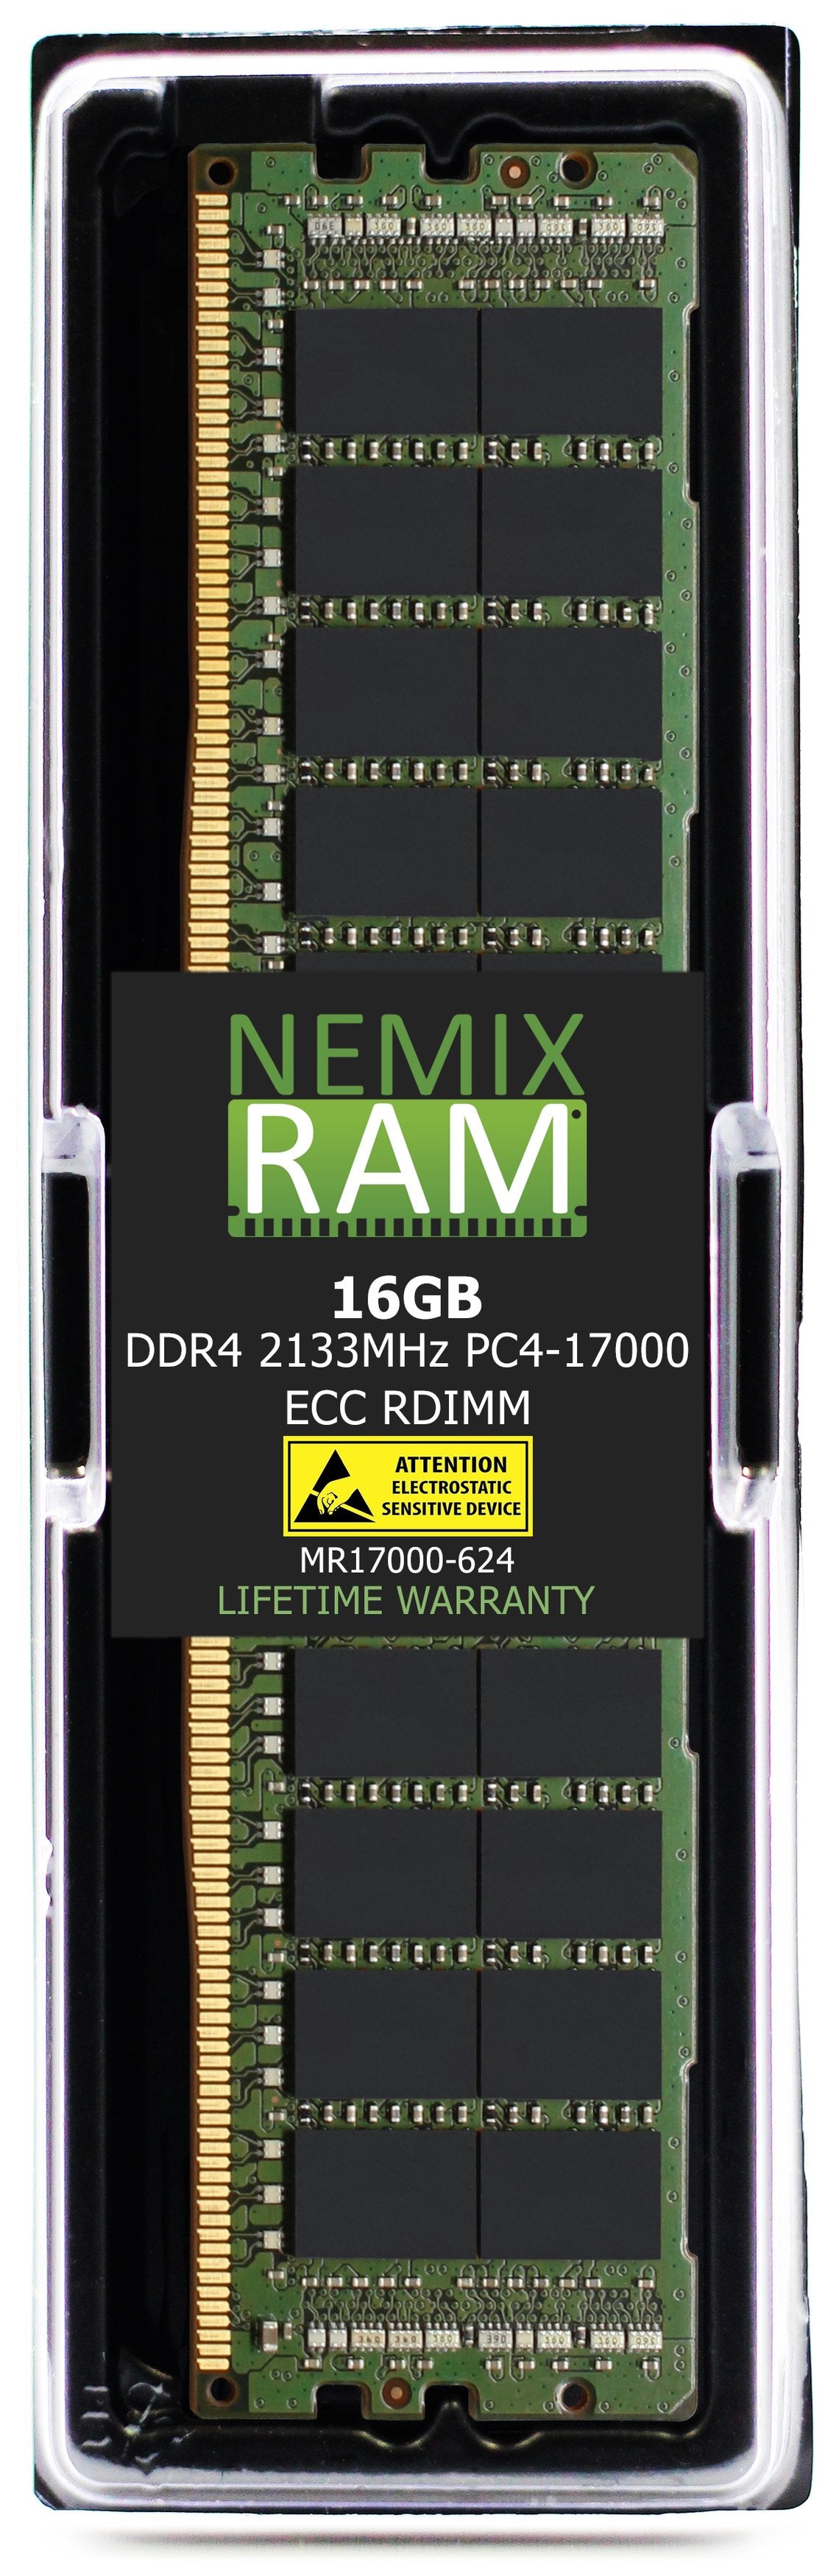 Hynix HMA42GR7MFR4N-TF 16GB DDR4 2133MHZ PC4-17000 RDIMM Compatible Memory Module